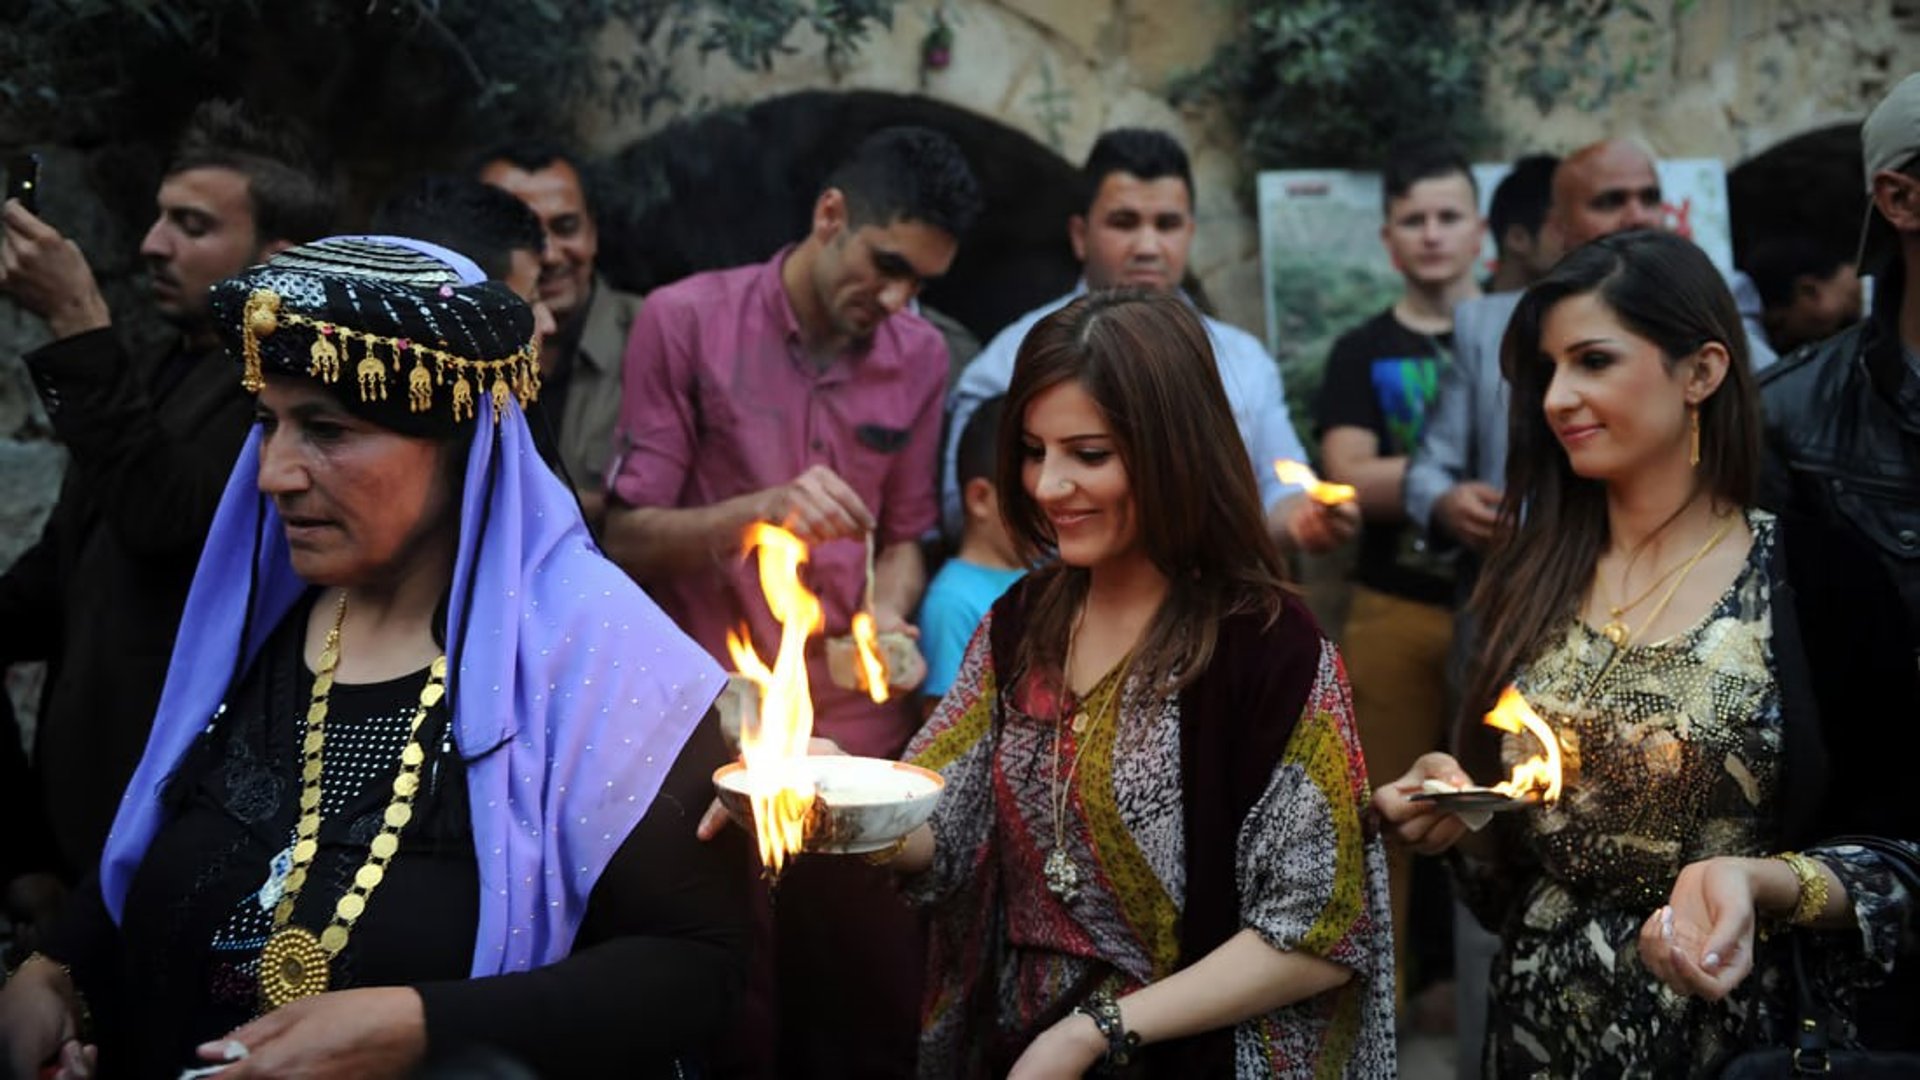 مديرية شؤون الإيزيديين في كردستان: عيدنا يوم غد ولا علاقة لنا بـ 